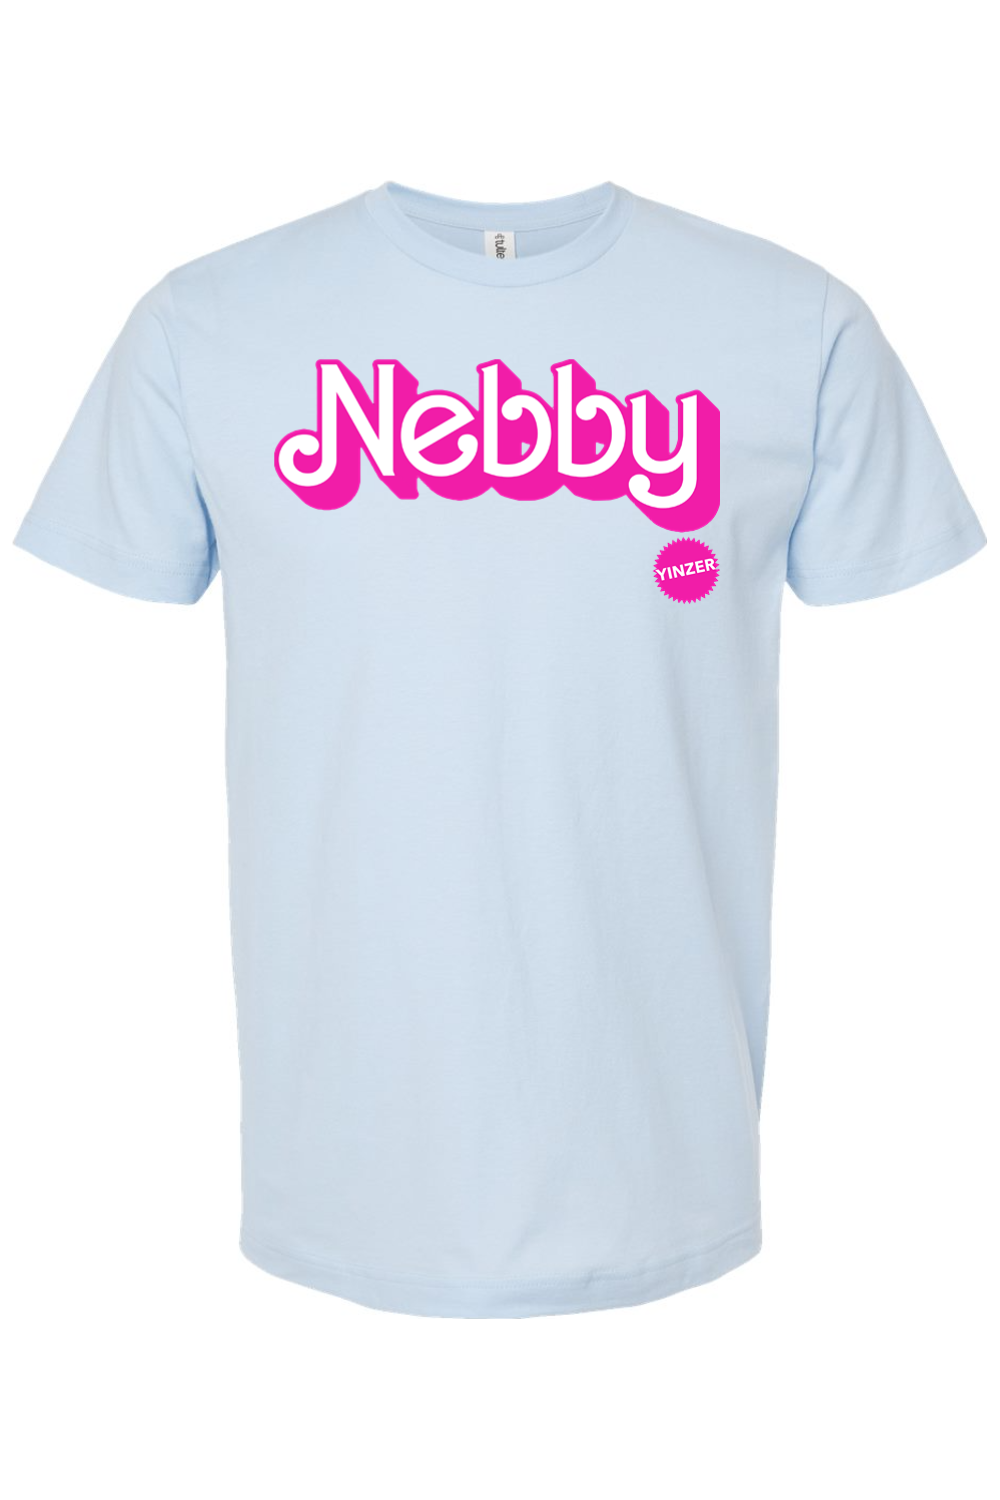 Malibu Nebby - Jersey Tee - Yinzylvania